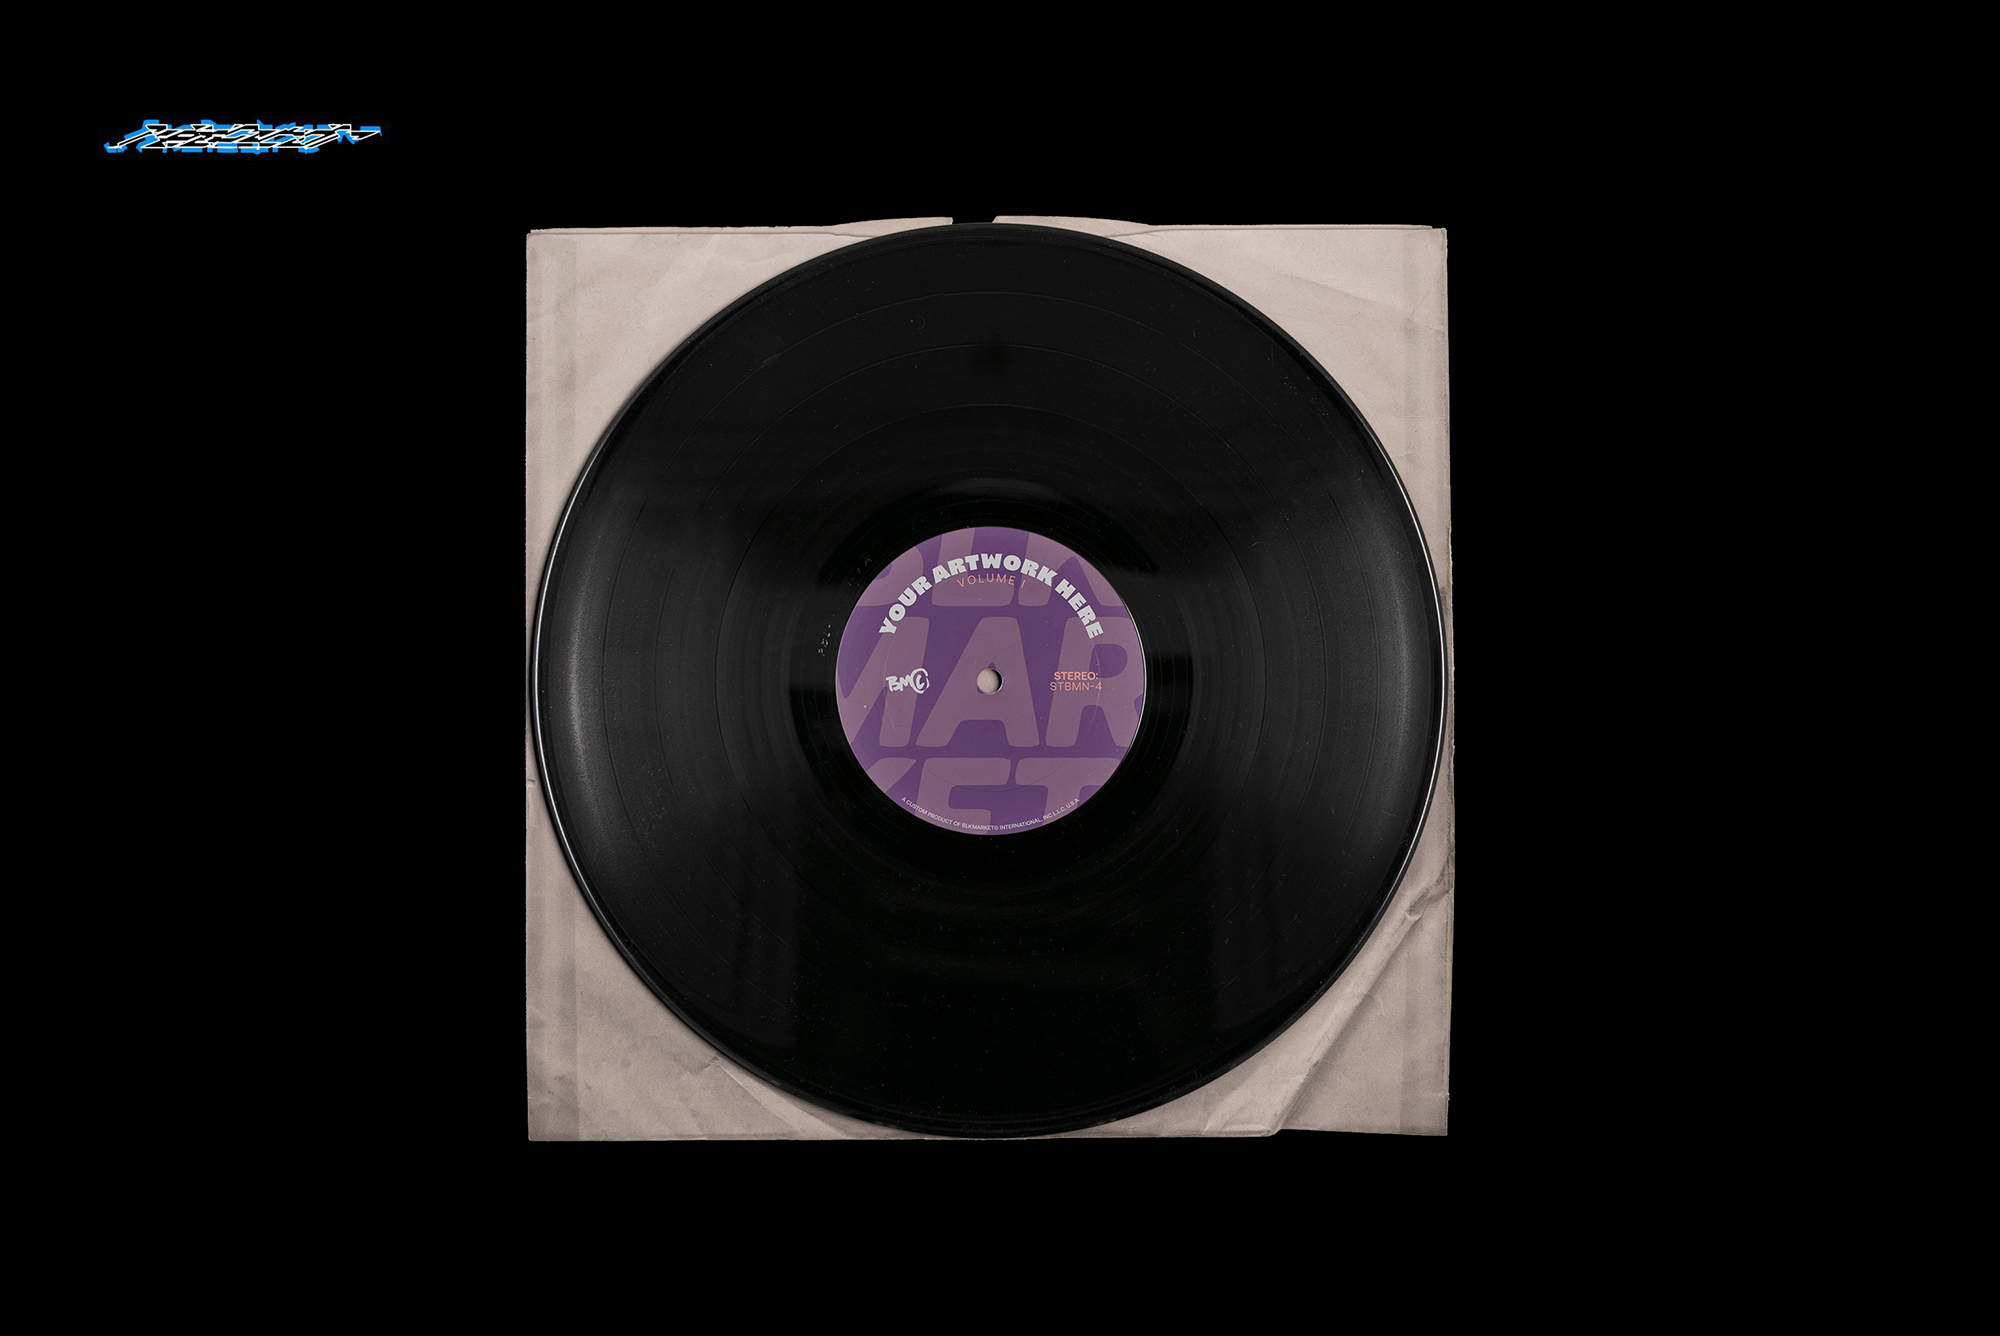 复古老物件黑胶唱片塑料包装设计展示样机模板 record s